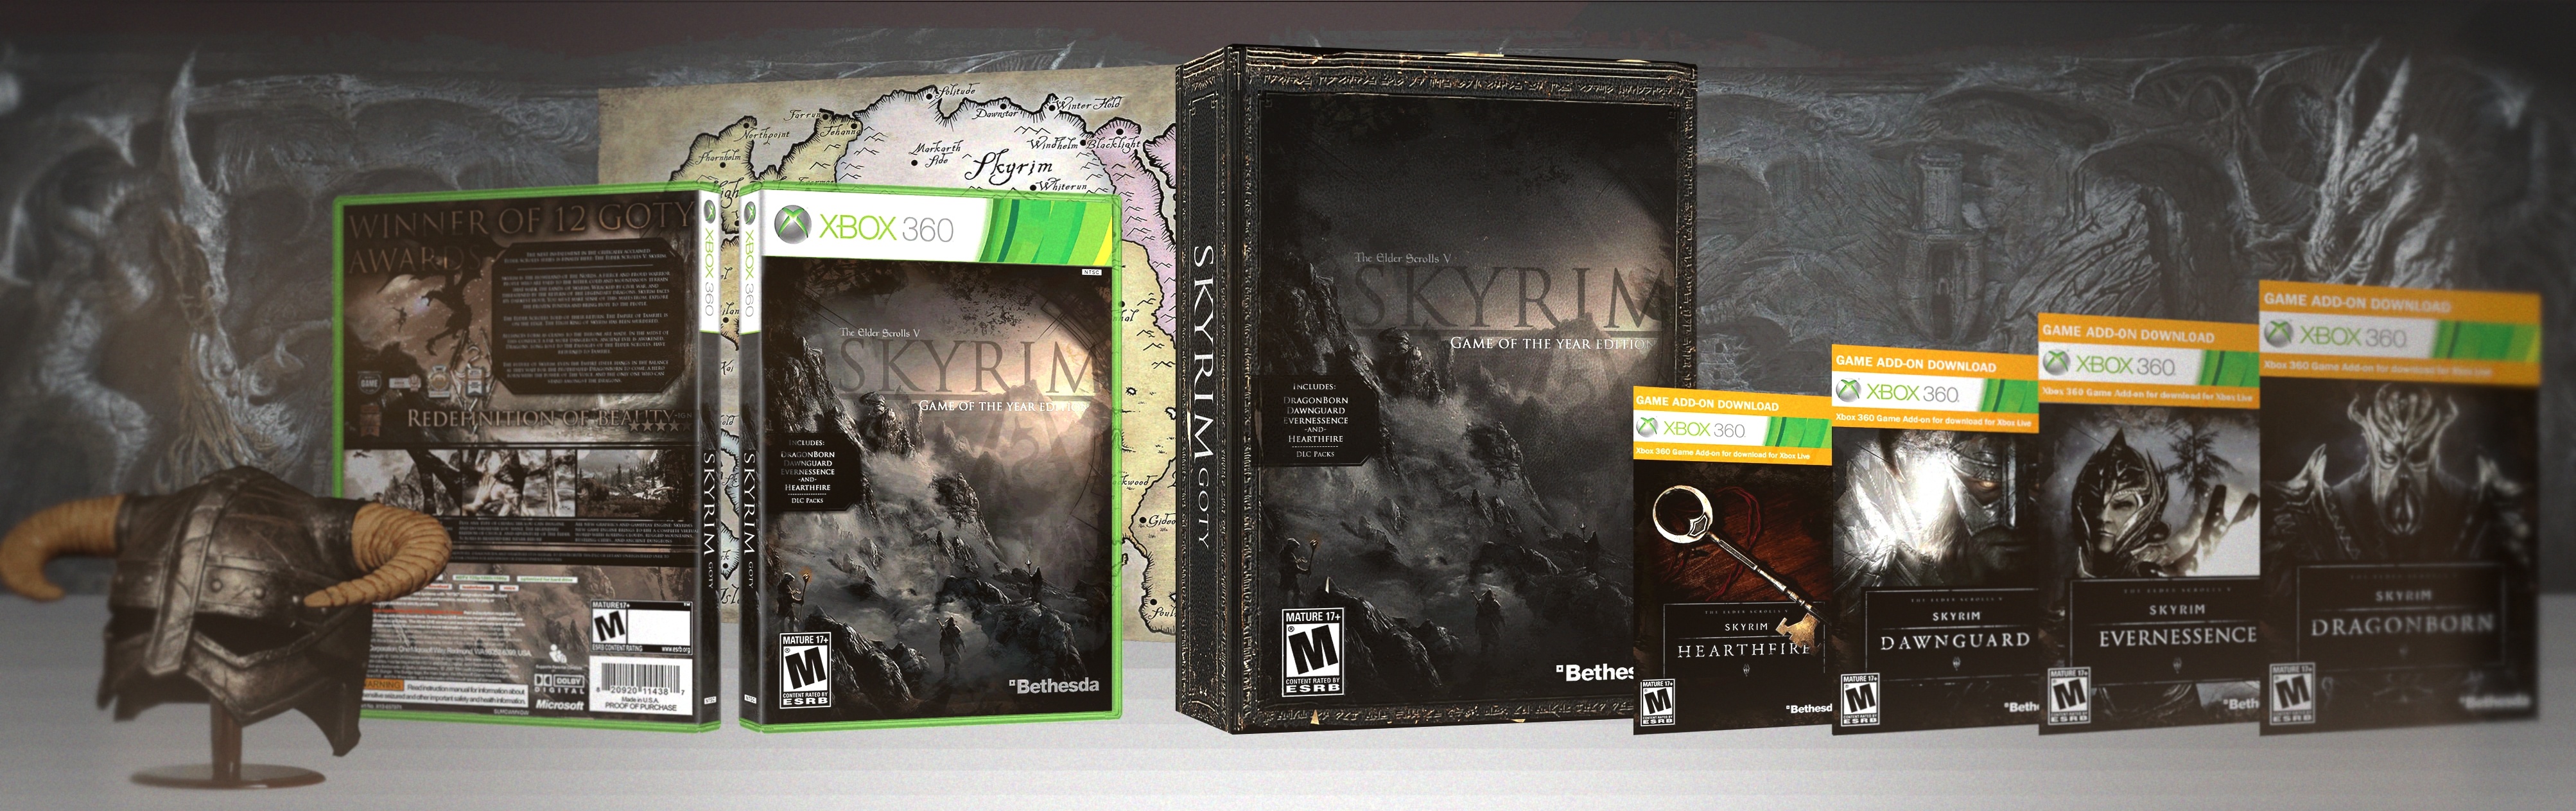 The Elder Scrolls V: Skyrim GOTY Edition box cover